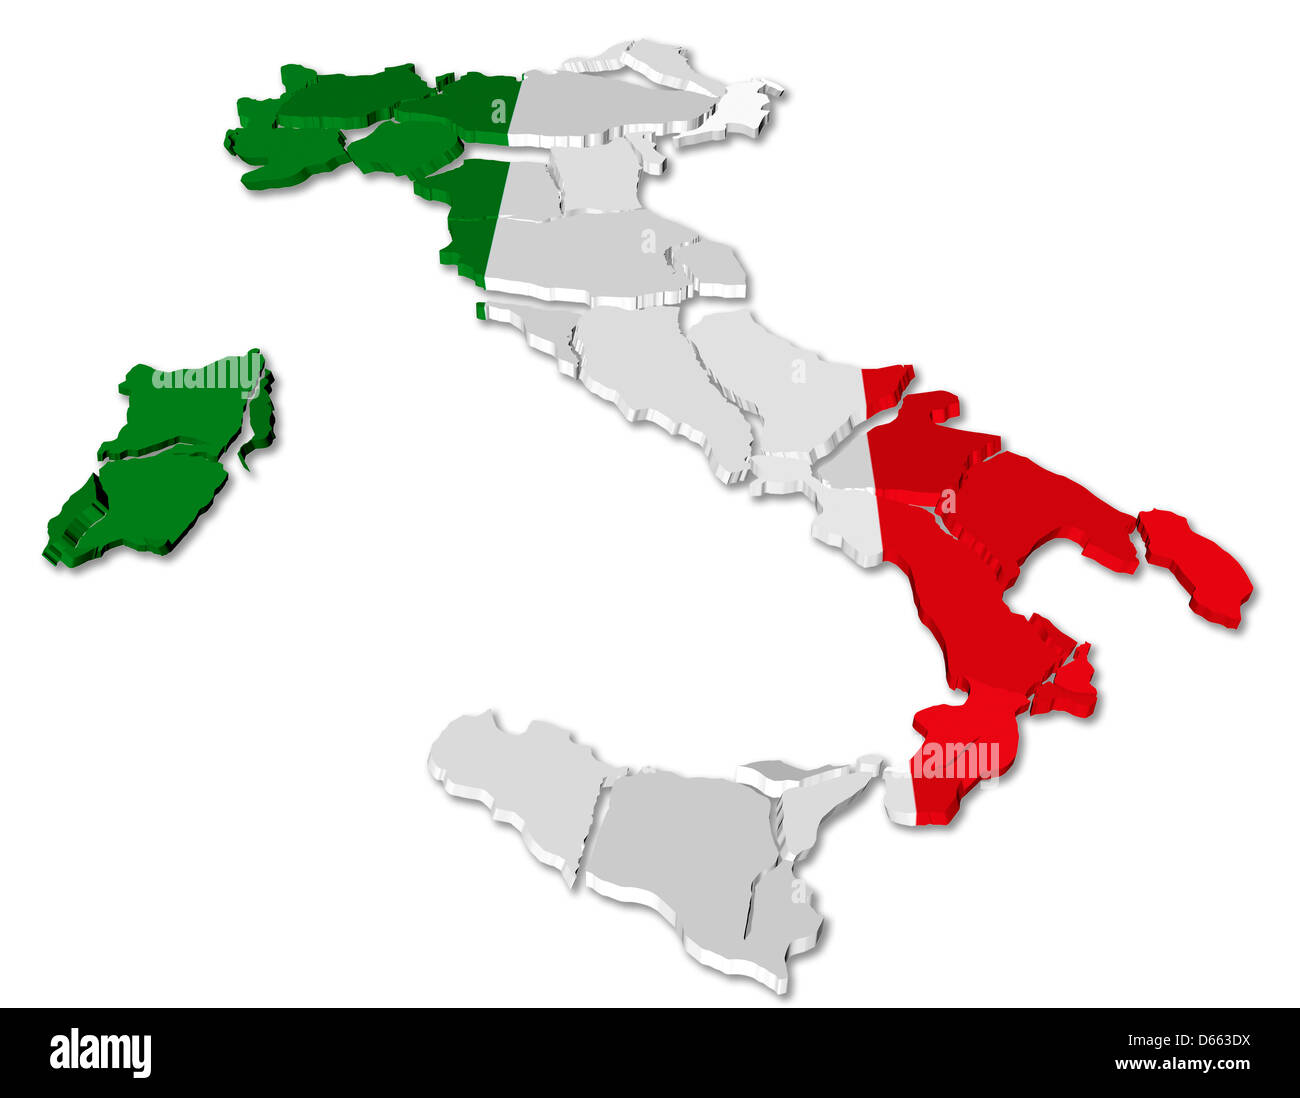 Italy map cracked Stock Photo